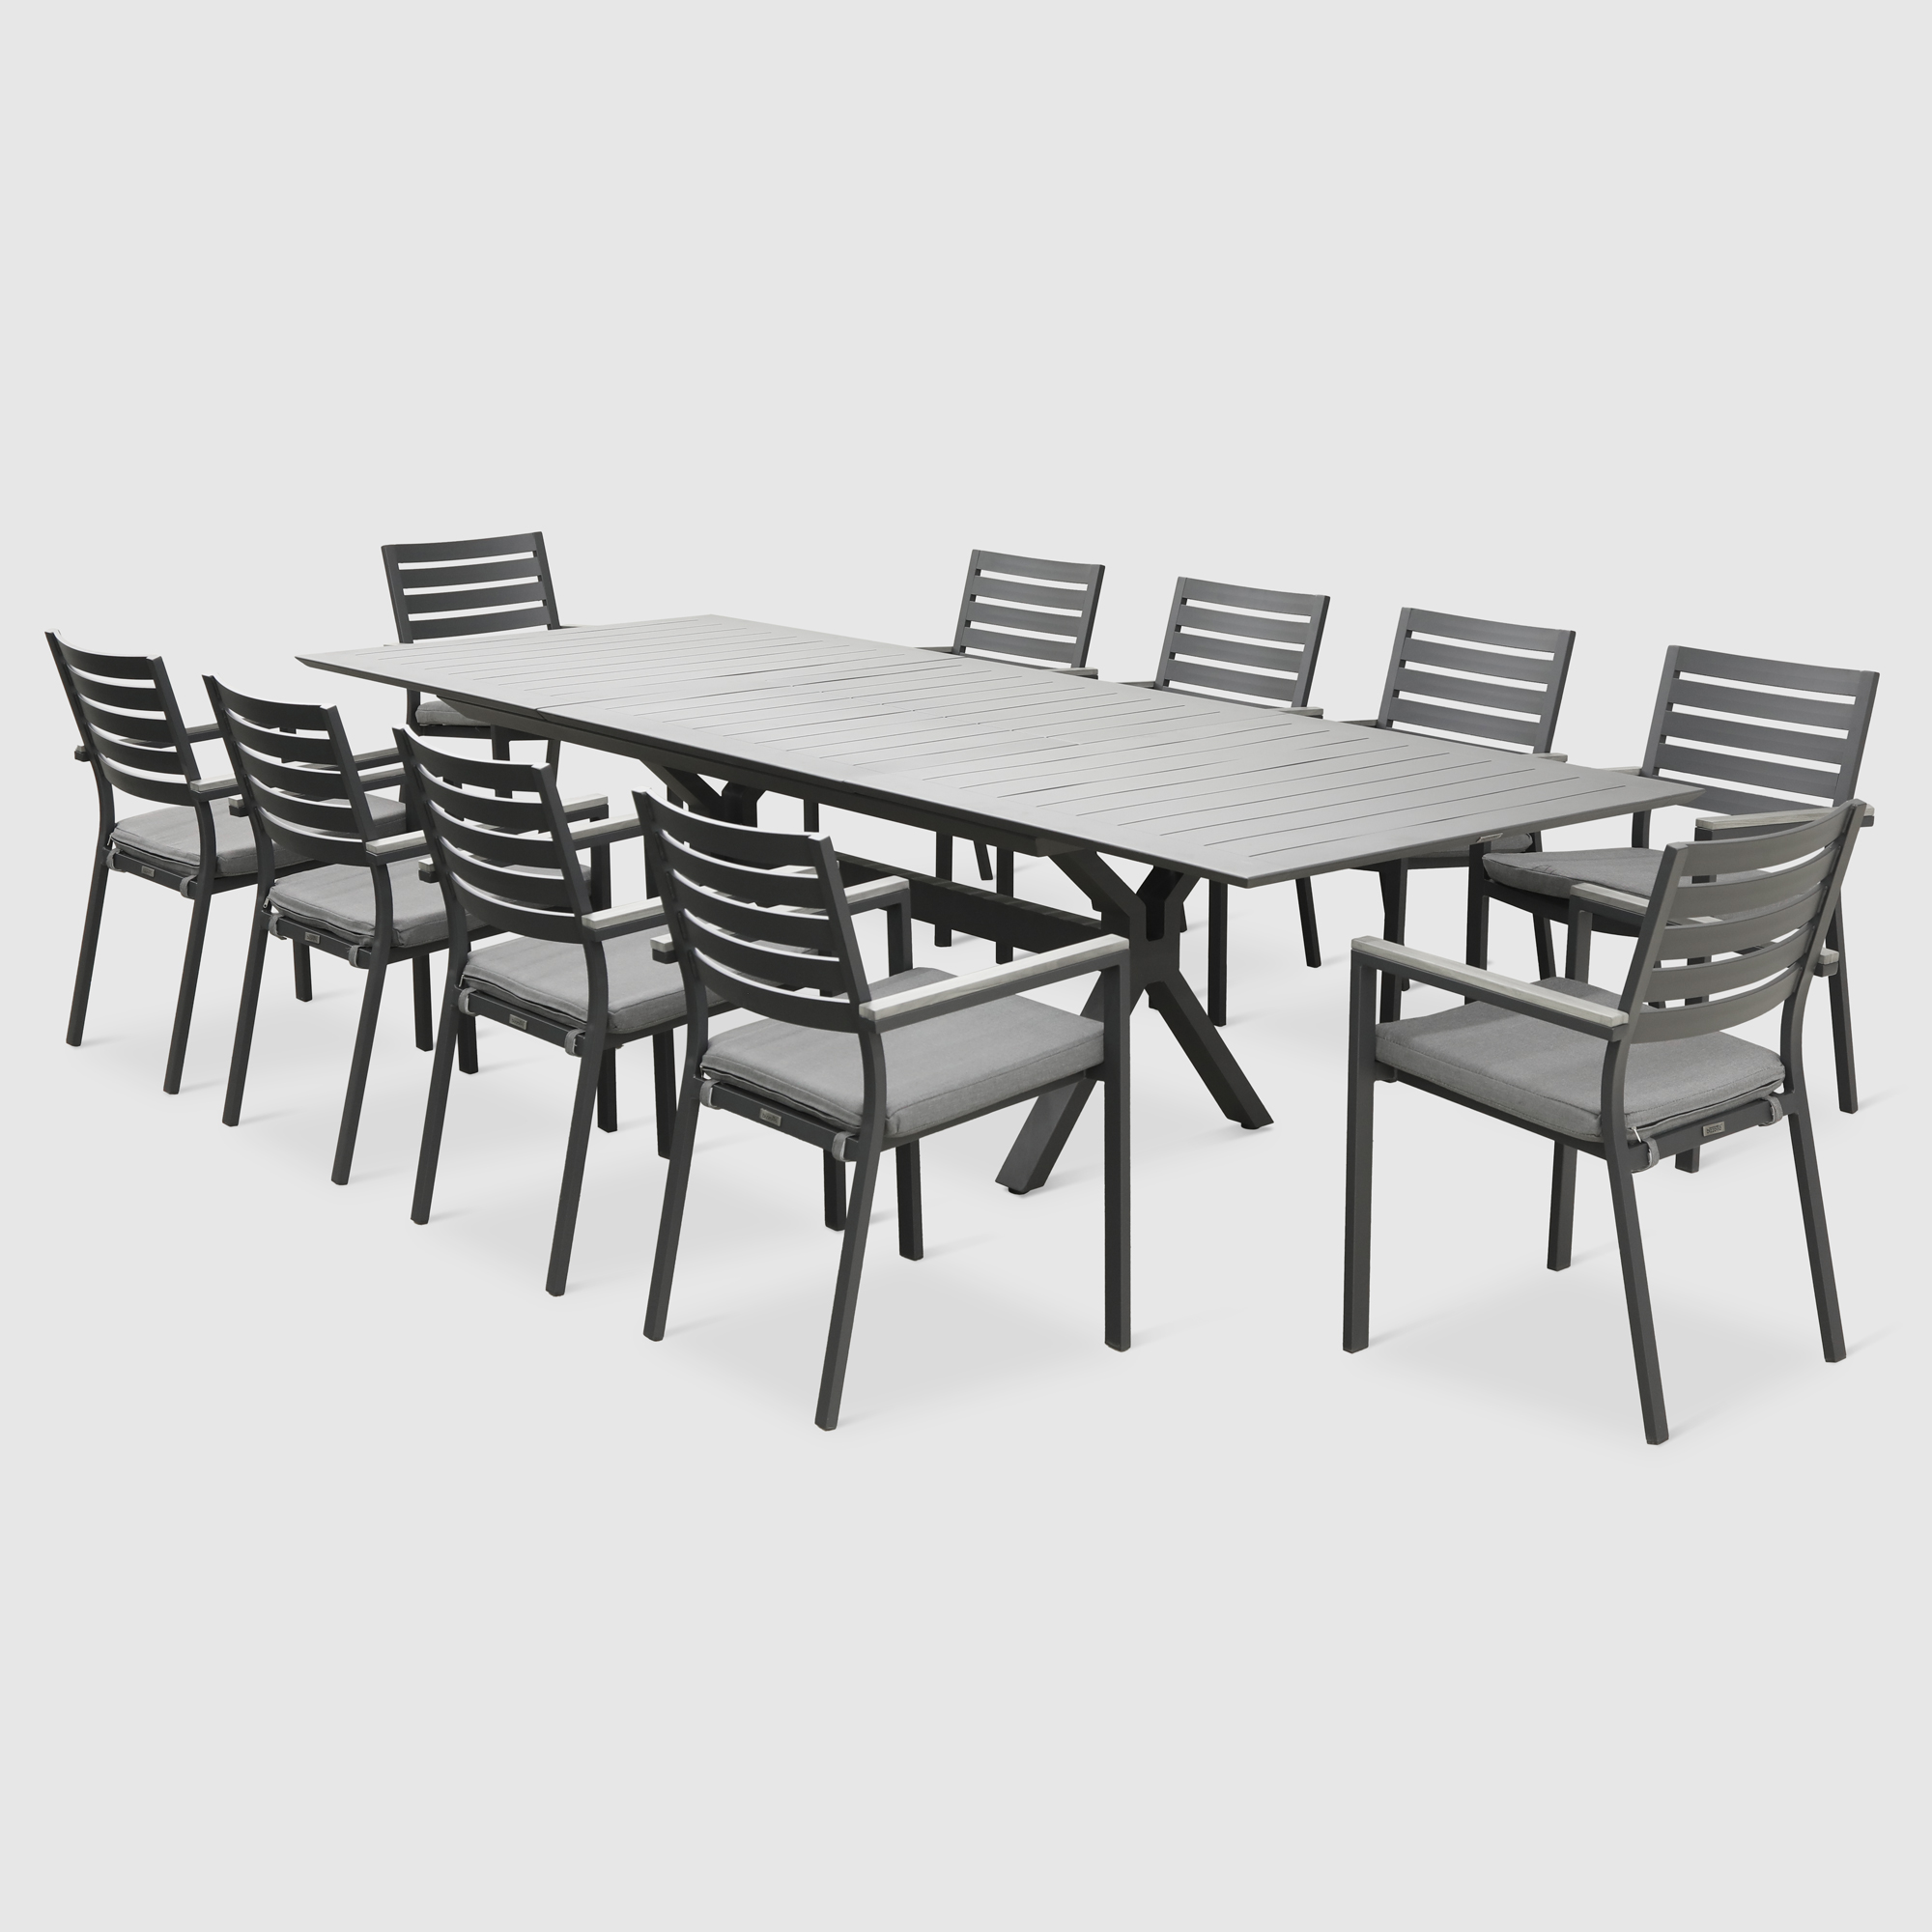 Комплект мебели Bizzotto угольный 11 предметов комплект садовой мебели mandella karizma коричневый из 3 предметов